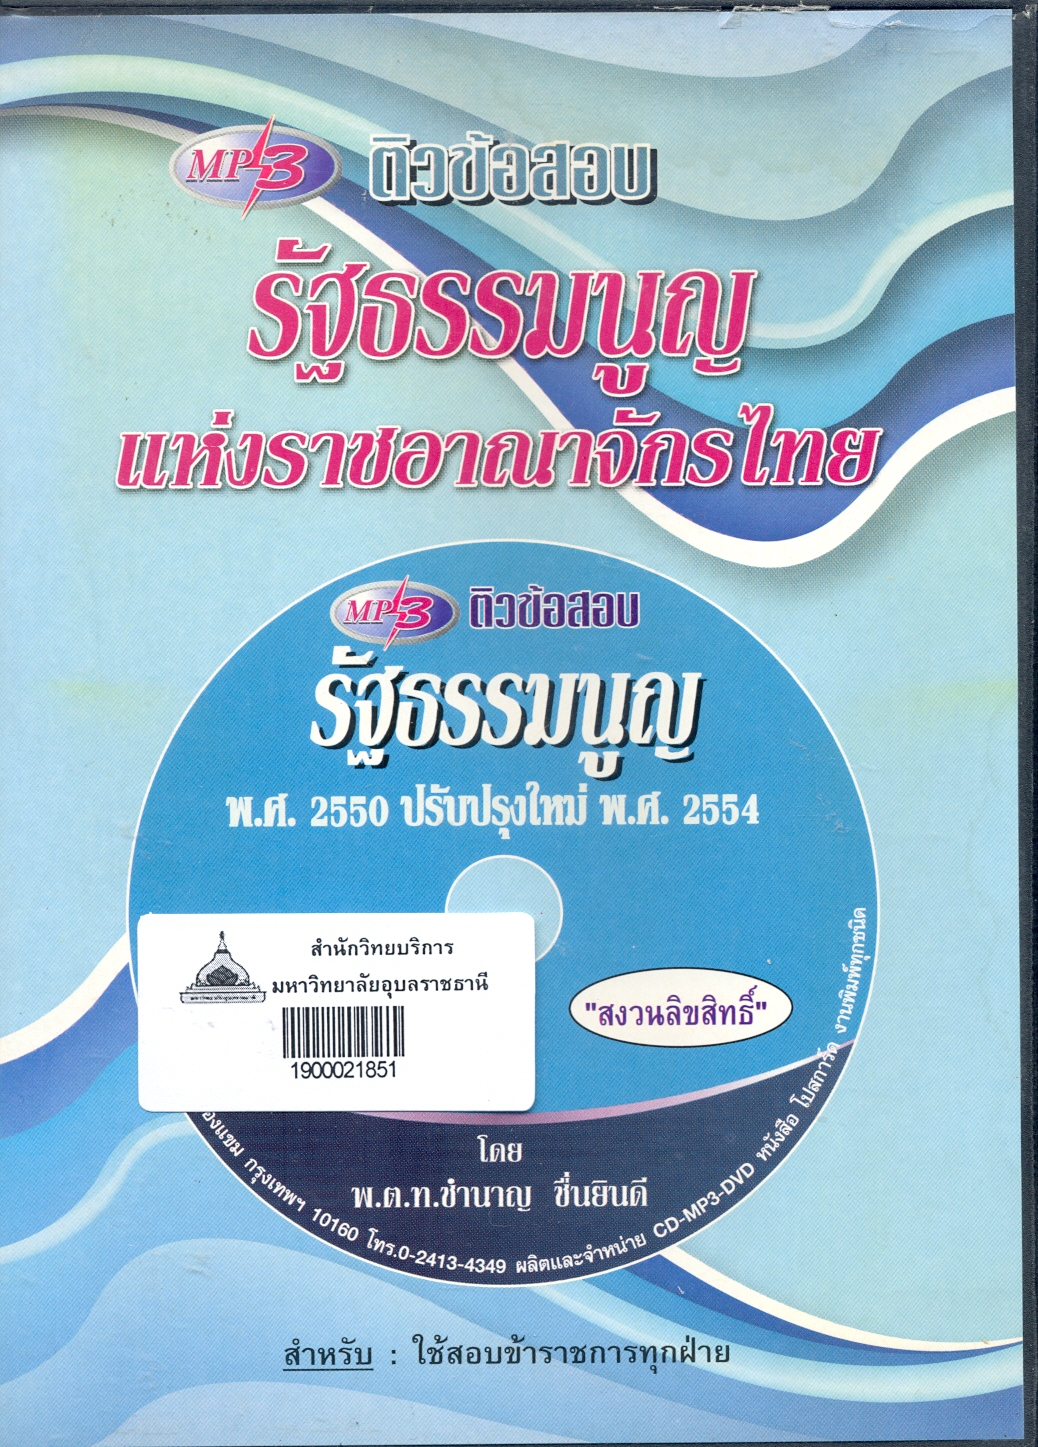 ติวข้อสอบ รัฐธรรมนูญแห่งราชอาณาจักรไทย 2550 แก้ไขใหม่ 2554